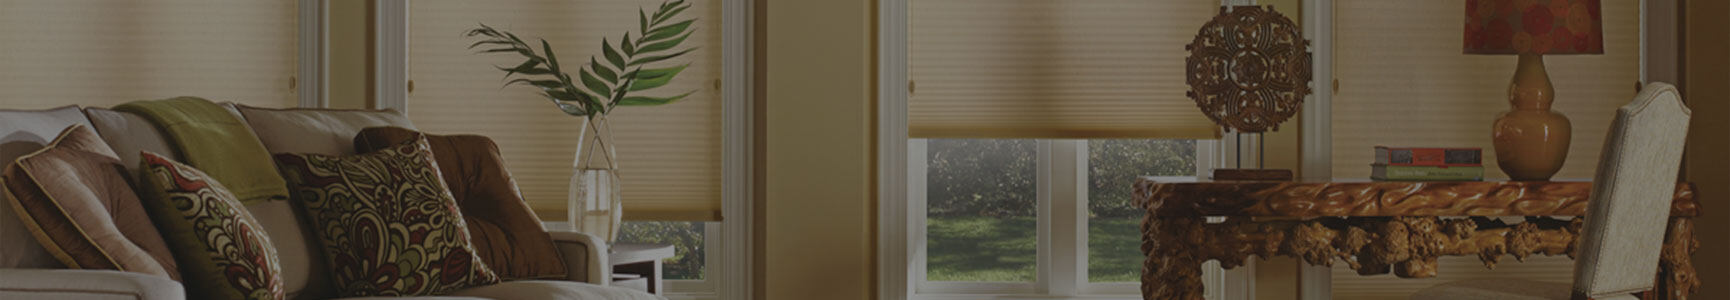 127mm wide vertical blinds, 89mm vertical blinds 